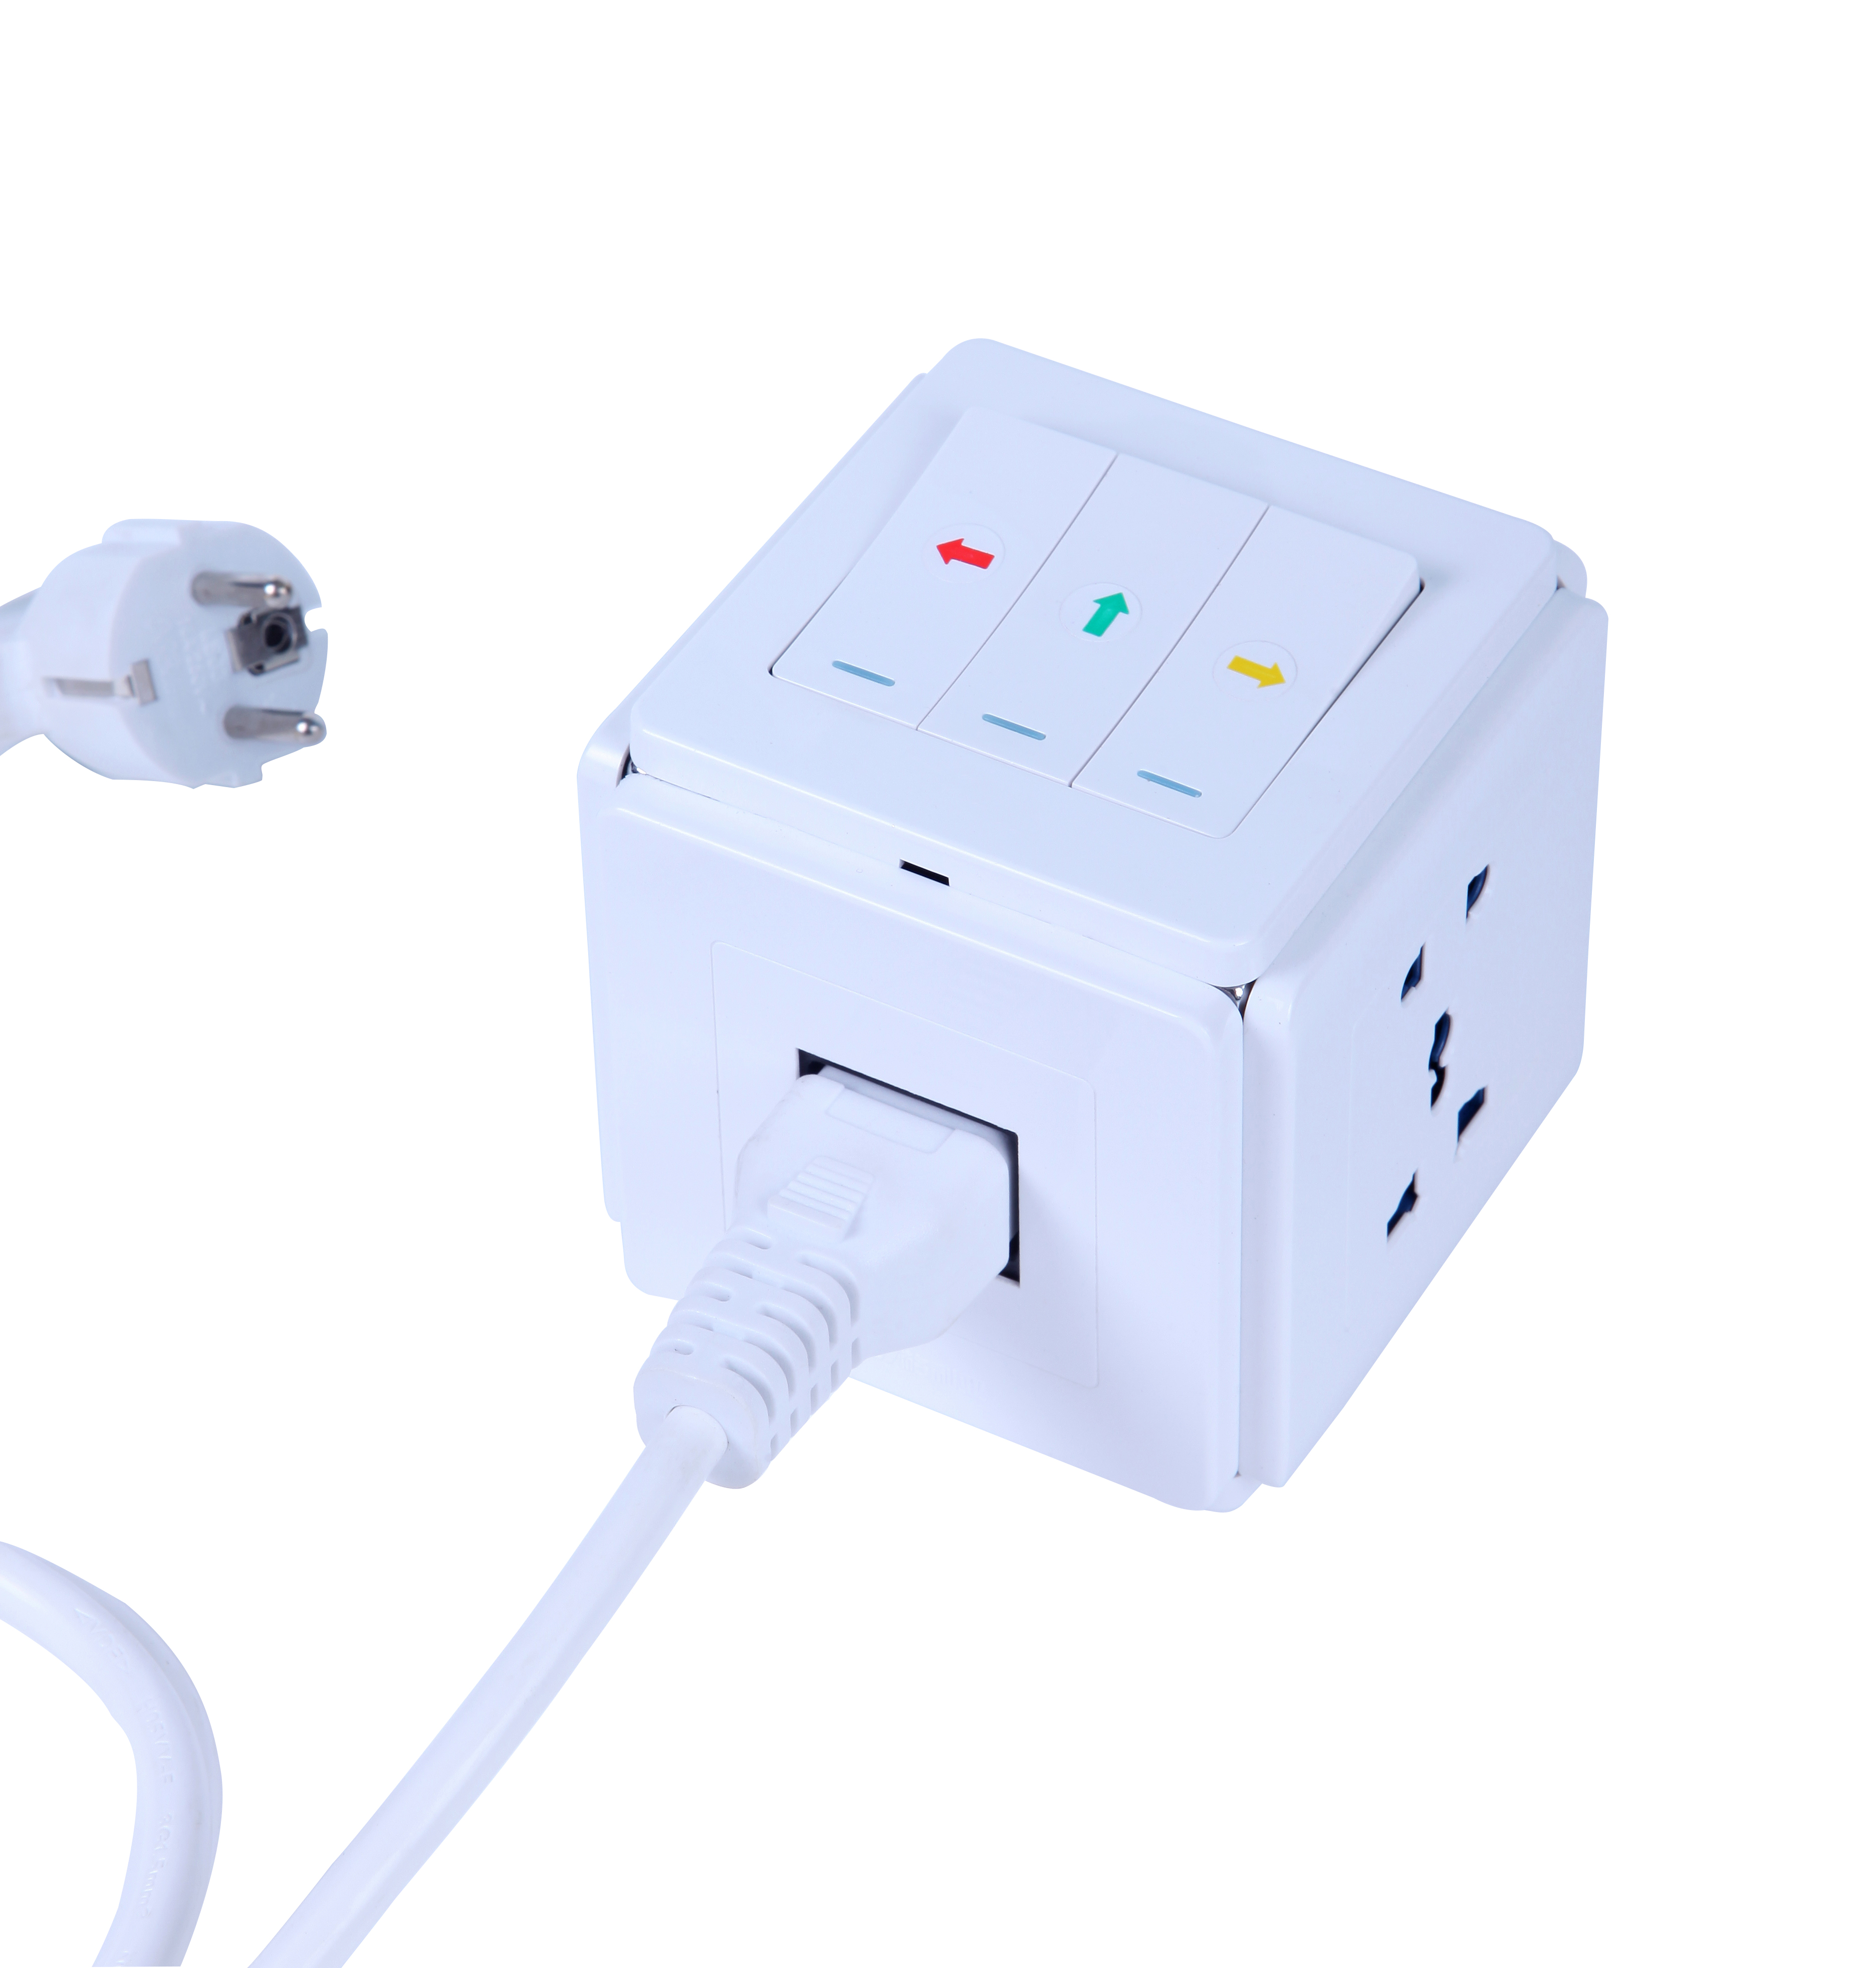 Новый многофункциональный адаптер Smart Power Pult Plug Cocket для экономии энергии Office с обычным 1,5 -метровым шнуром питания